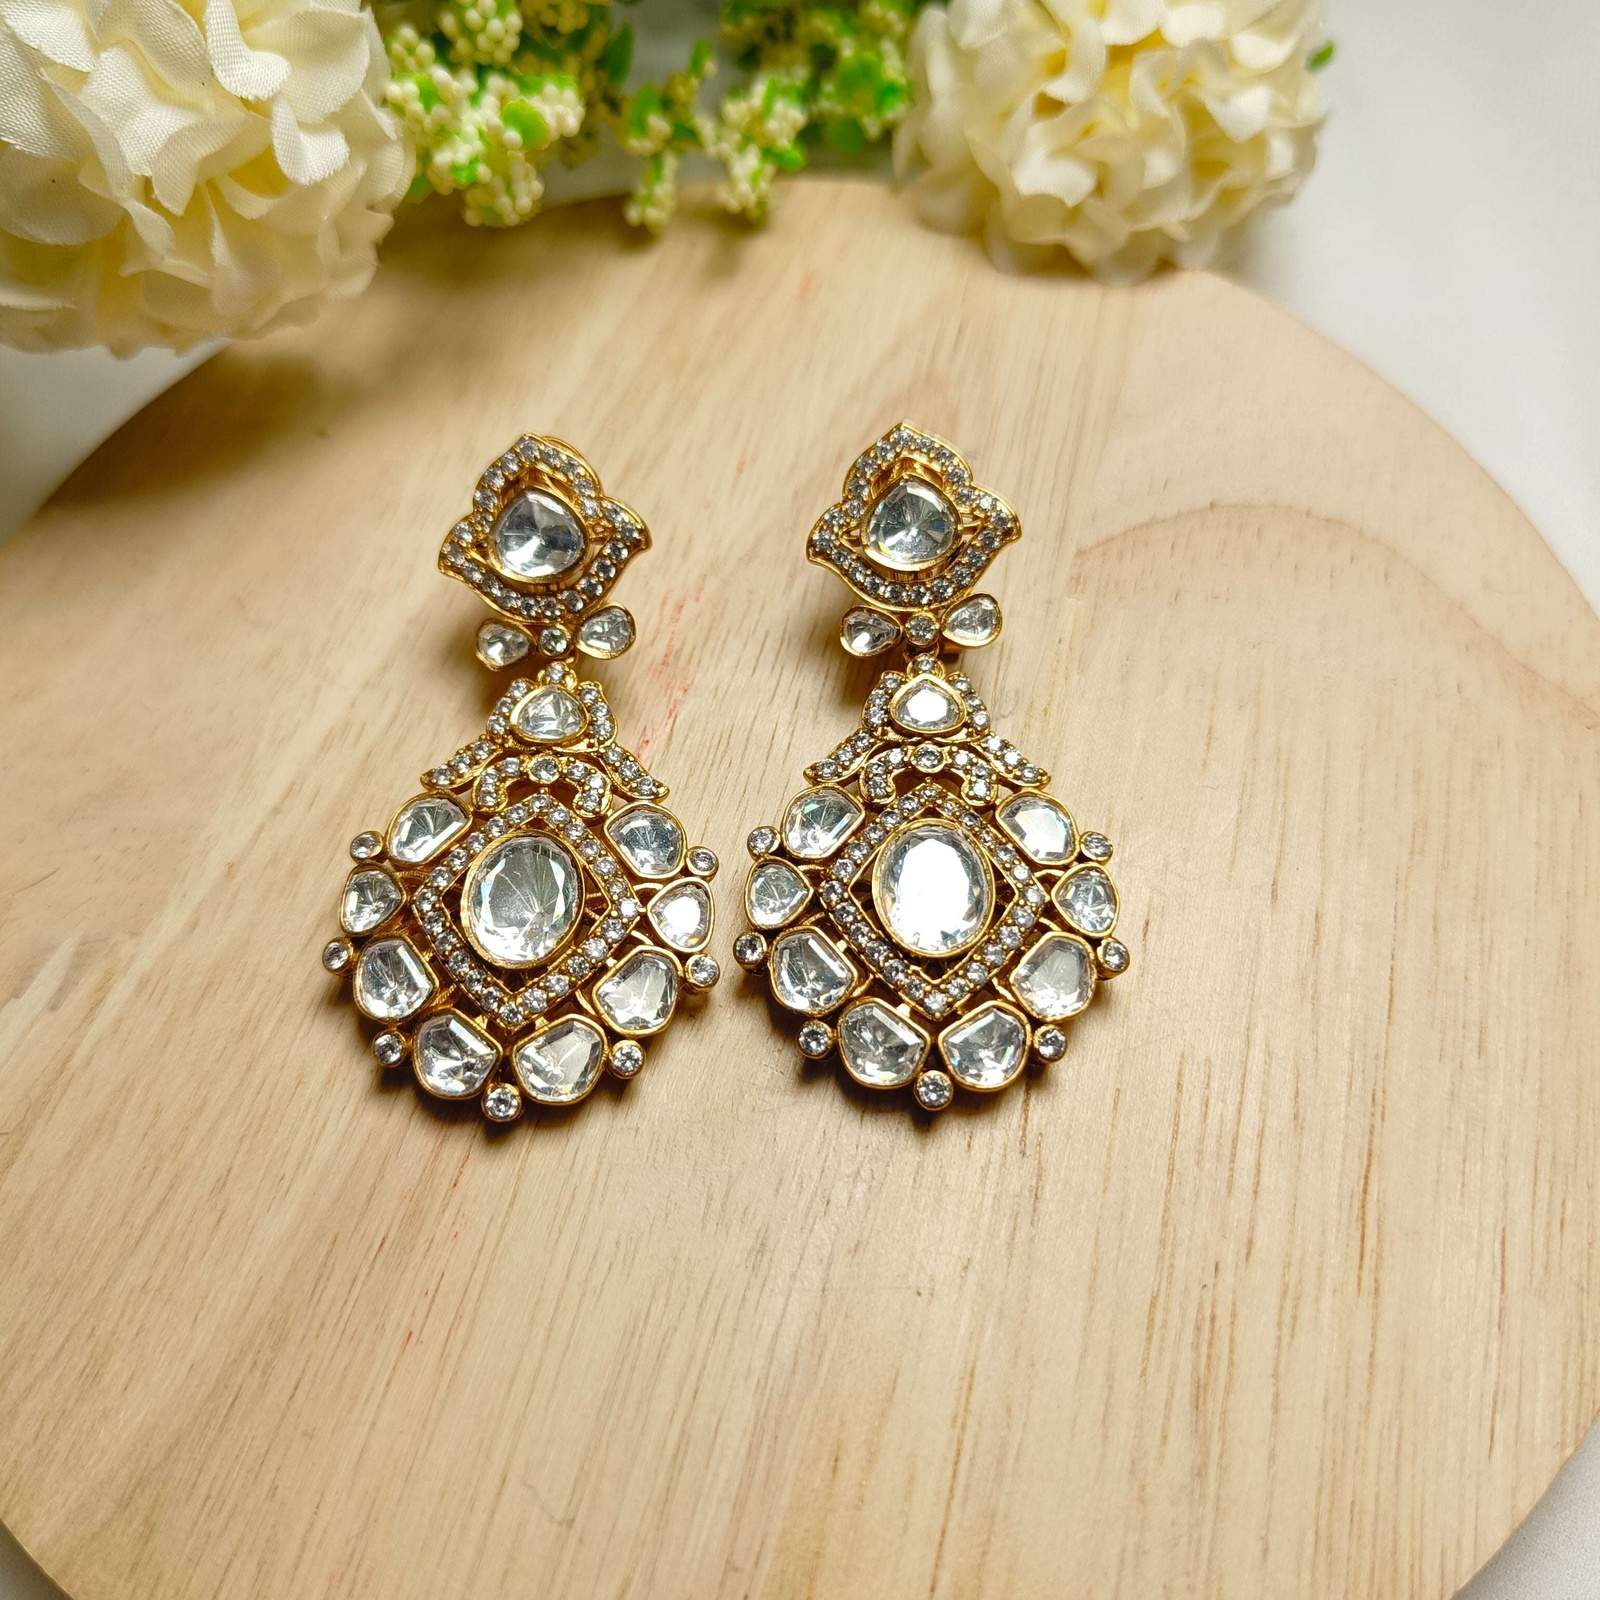 Nayaab Shraddha Polki earrings